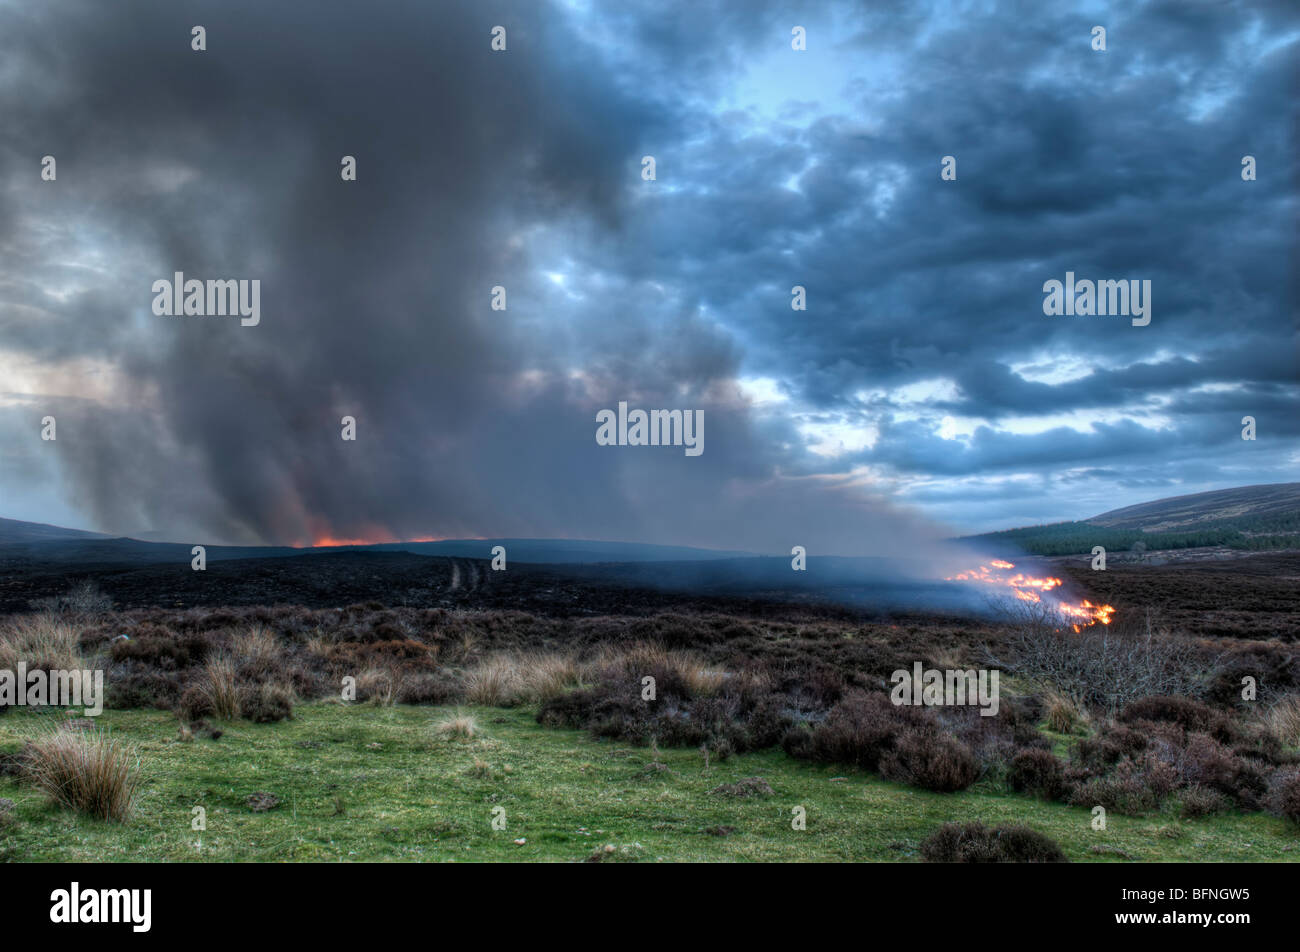 Hill tire sur des collines près de A836 entre Lairg et Bonar Bridge en Ecosse prises au crépuscule avec brûler heather et pinceau. Image HDR Banque D'Images